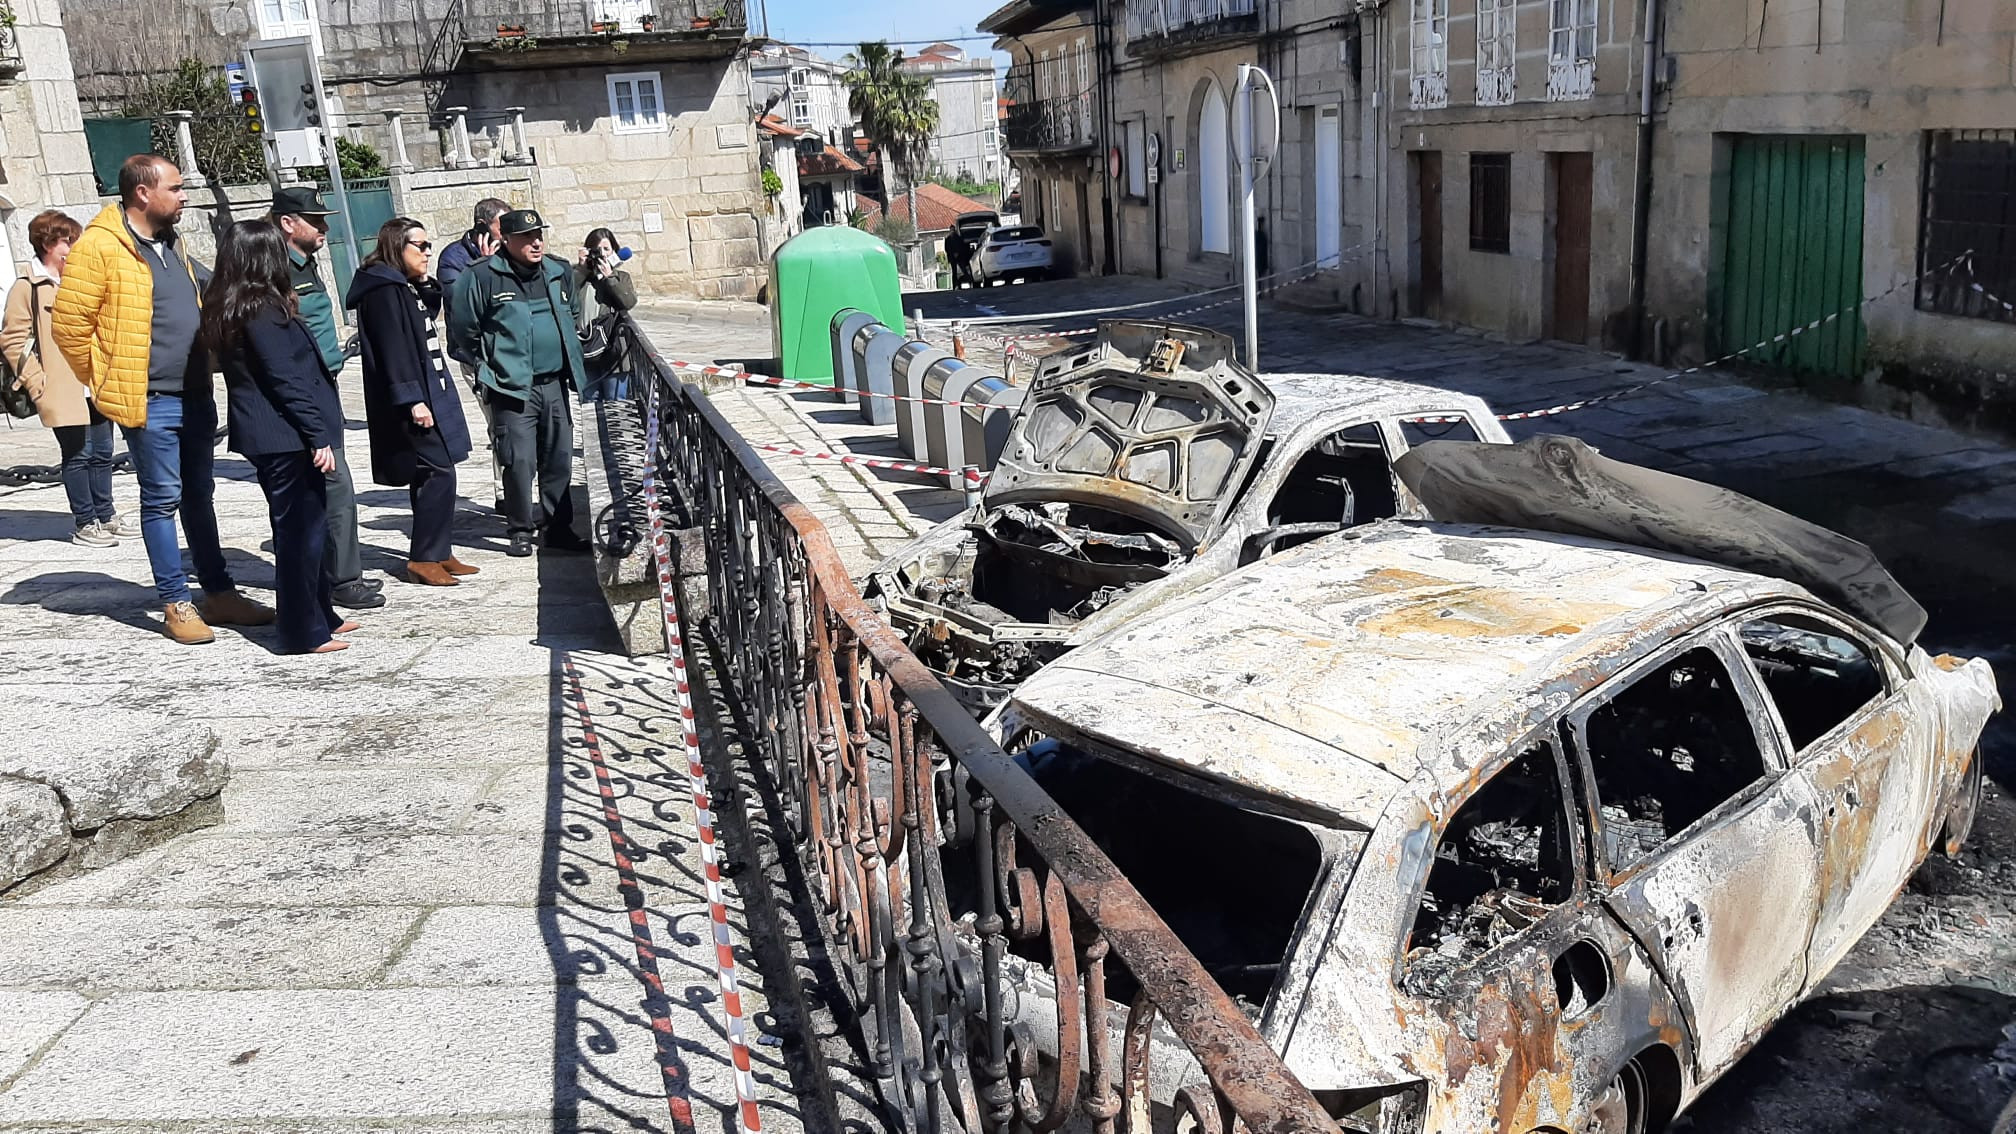 Visita de Maica Larriba a Tui tras los incendios. Foto: Subdelegación del Gobierno en Pontevedra.